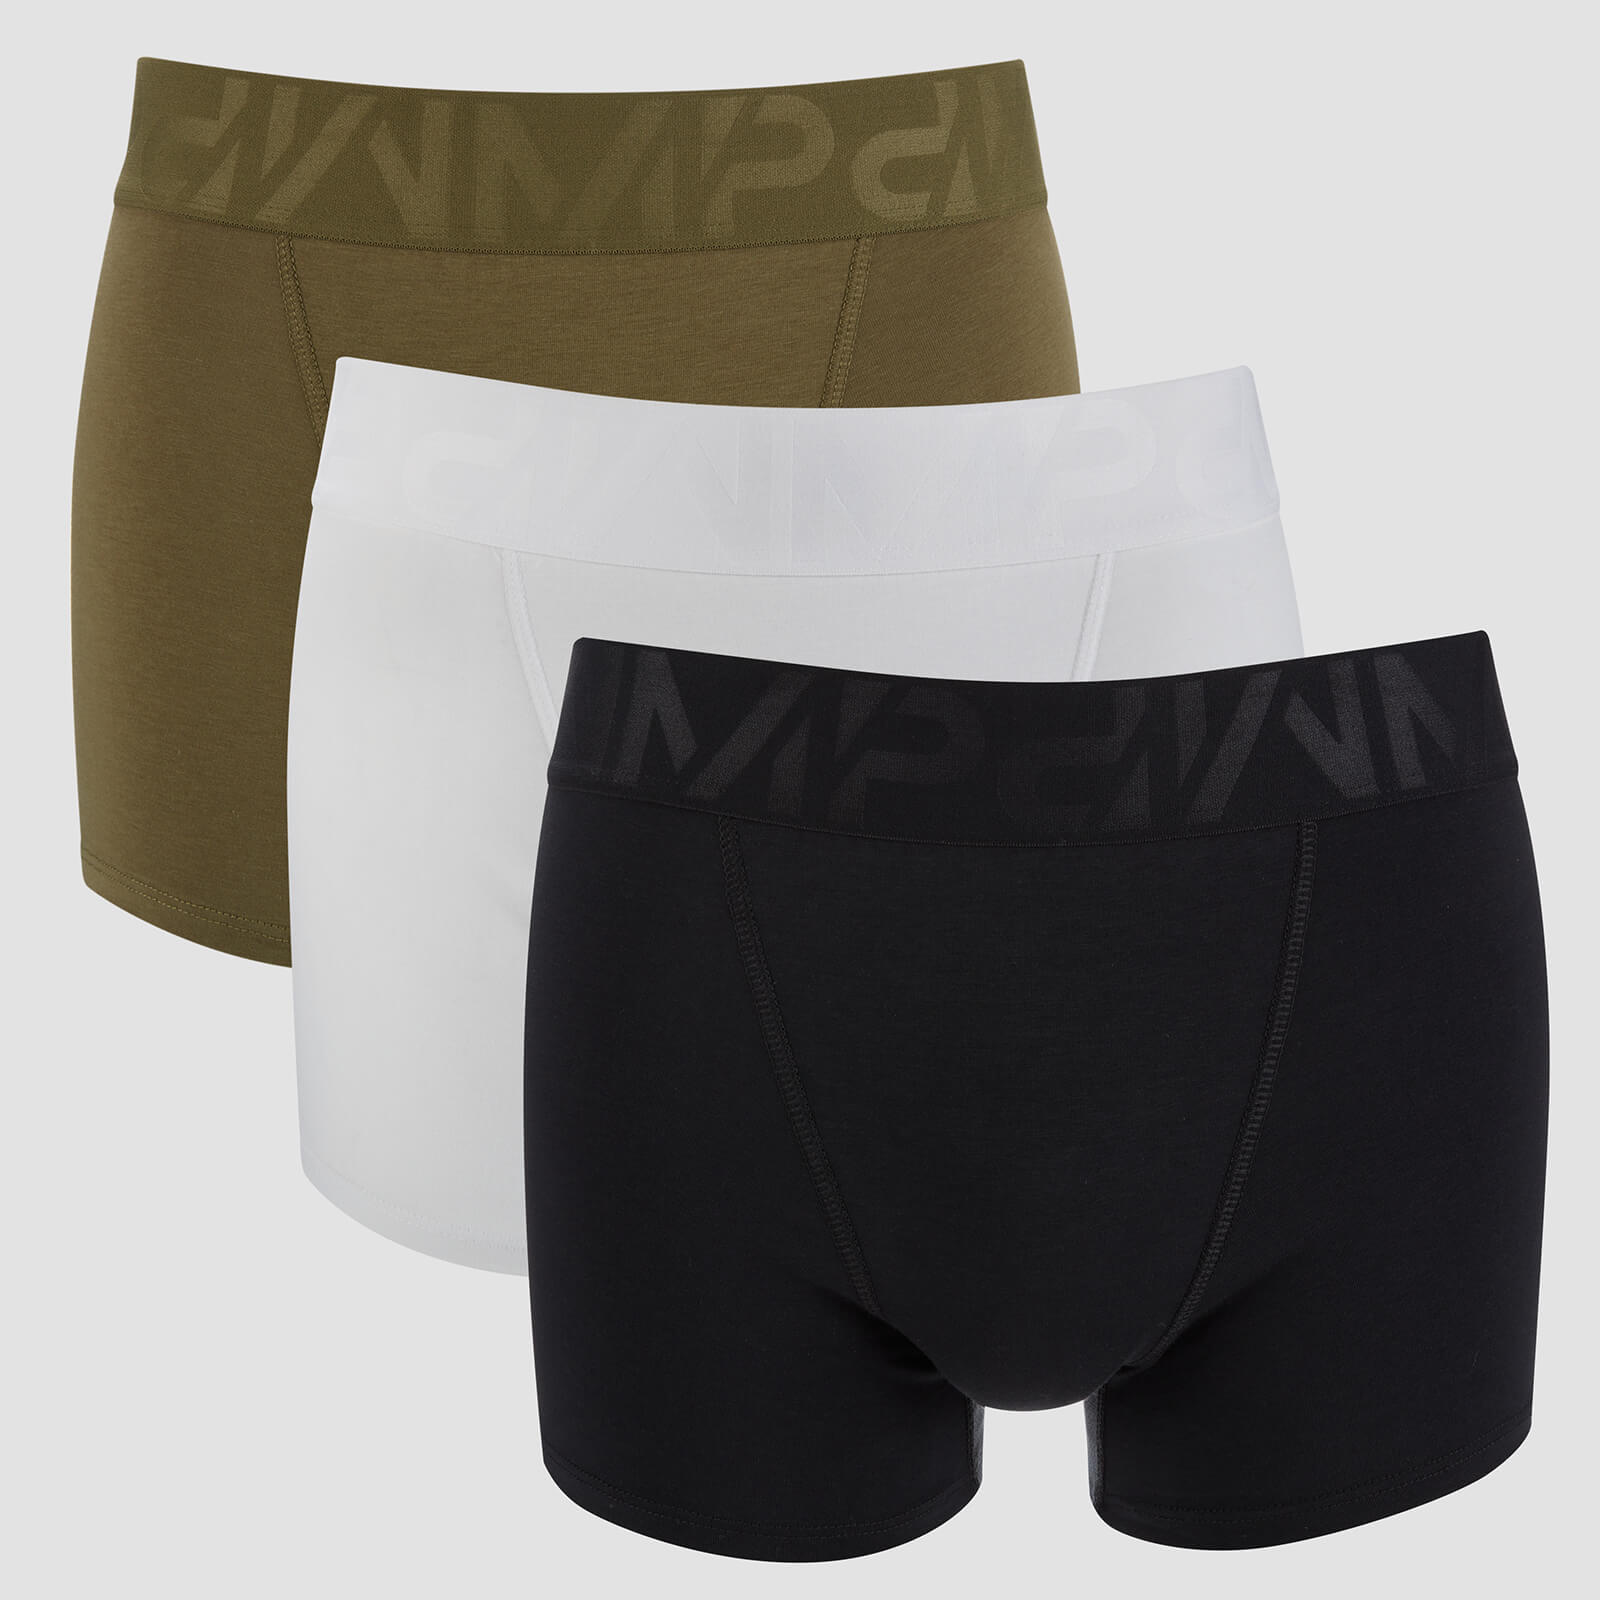 Pack de 3 Boxers Desportivos Para Homem - Preto/Caqui/Branco